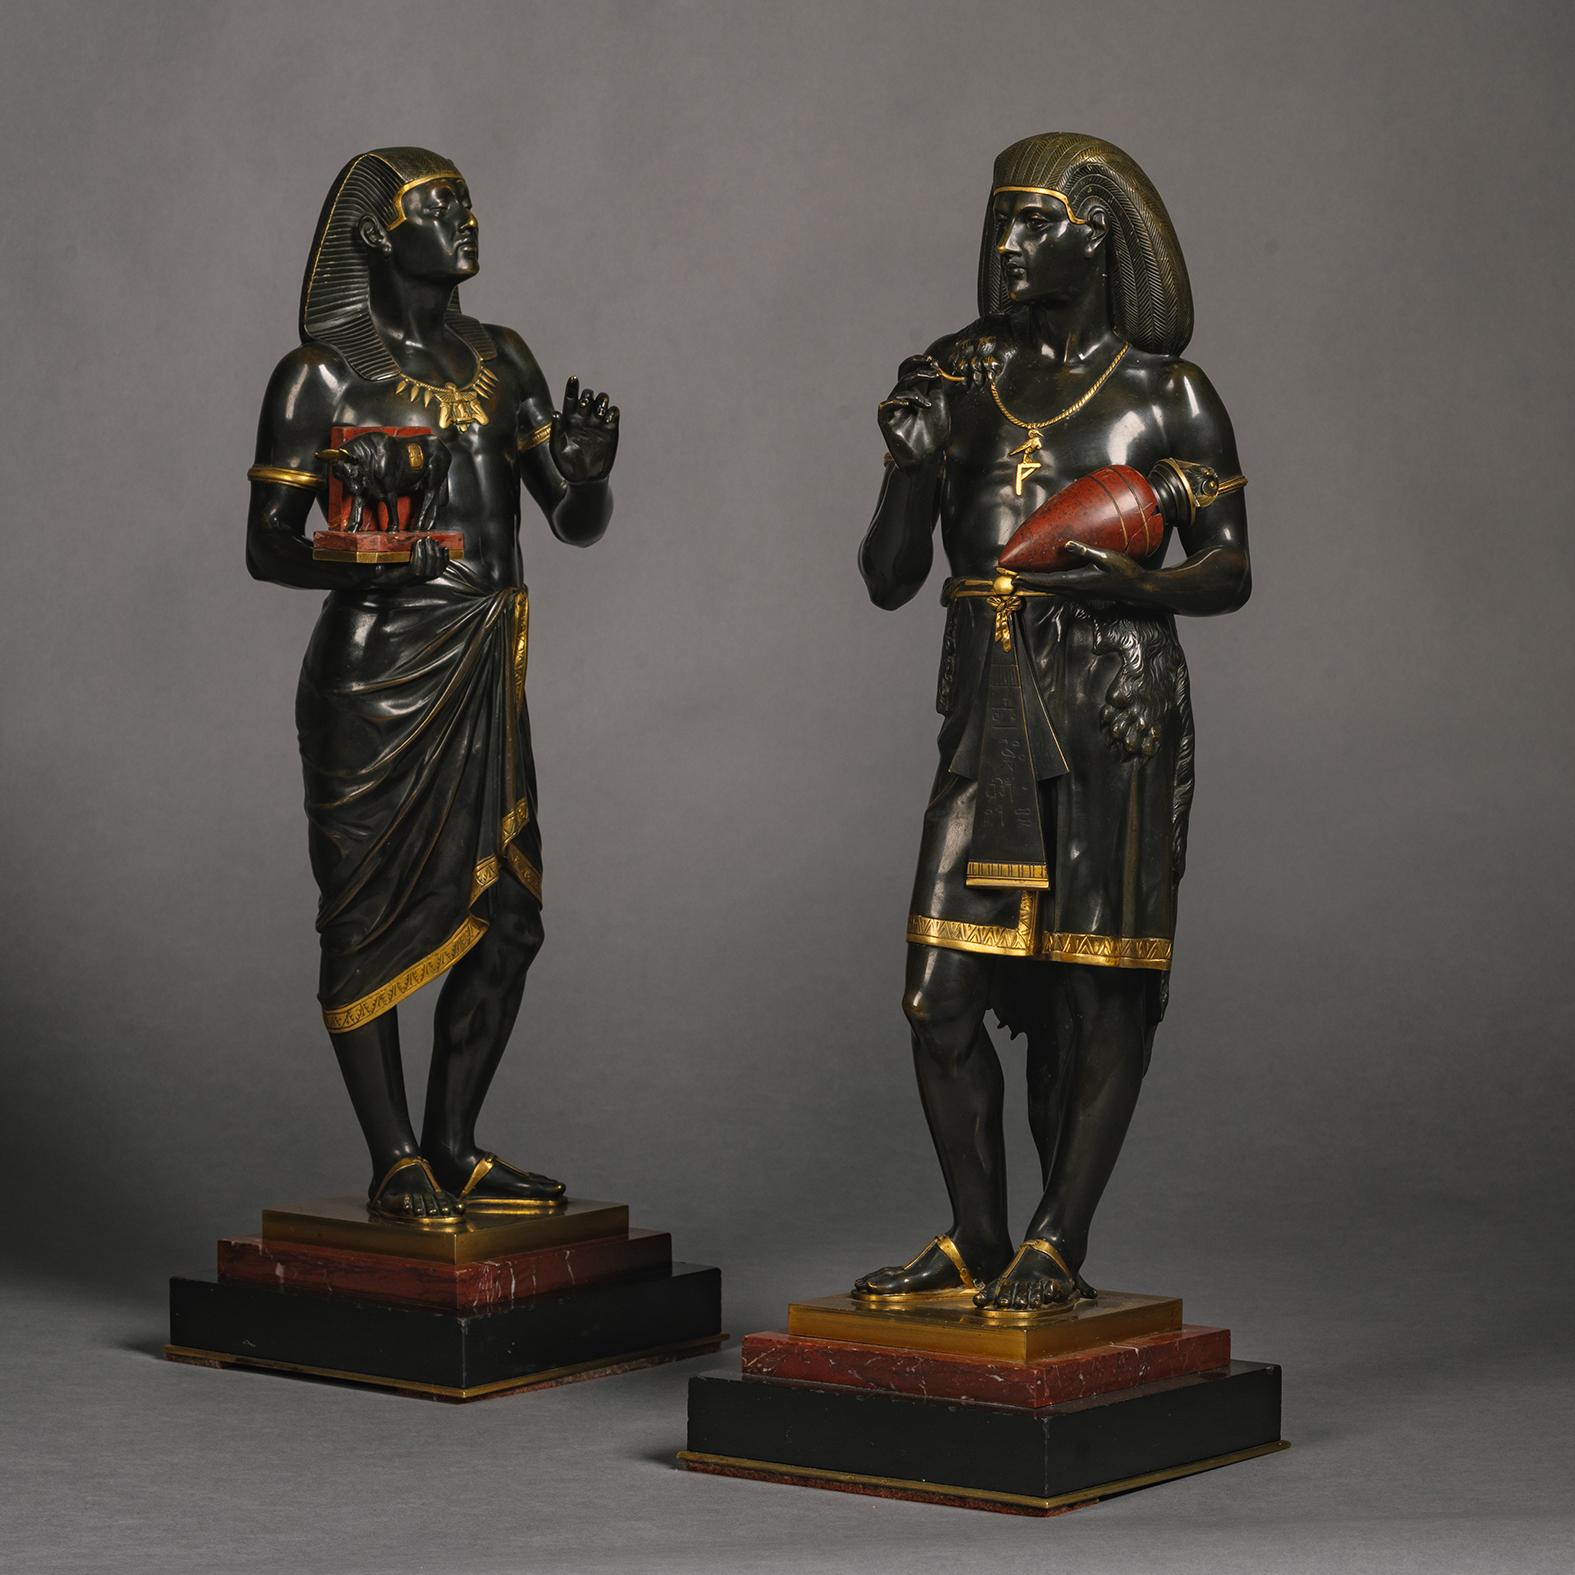 Paire de figurines en bronze patiné représentant le grand prêtre égyptien Pastophore et le scribe égyptien Hierogrammate, par Emile Louis Picault (français, 1833-1915).
   
Chaque exemplaire est signé 